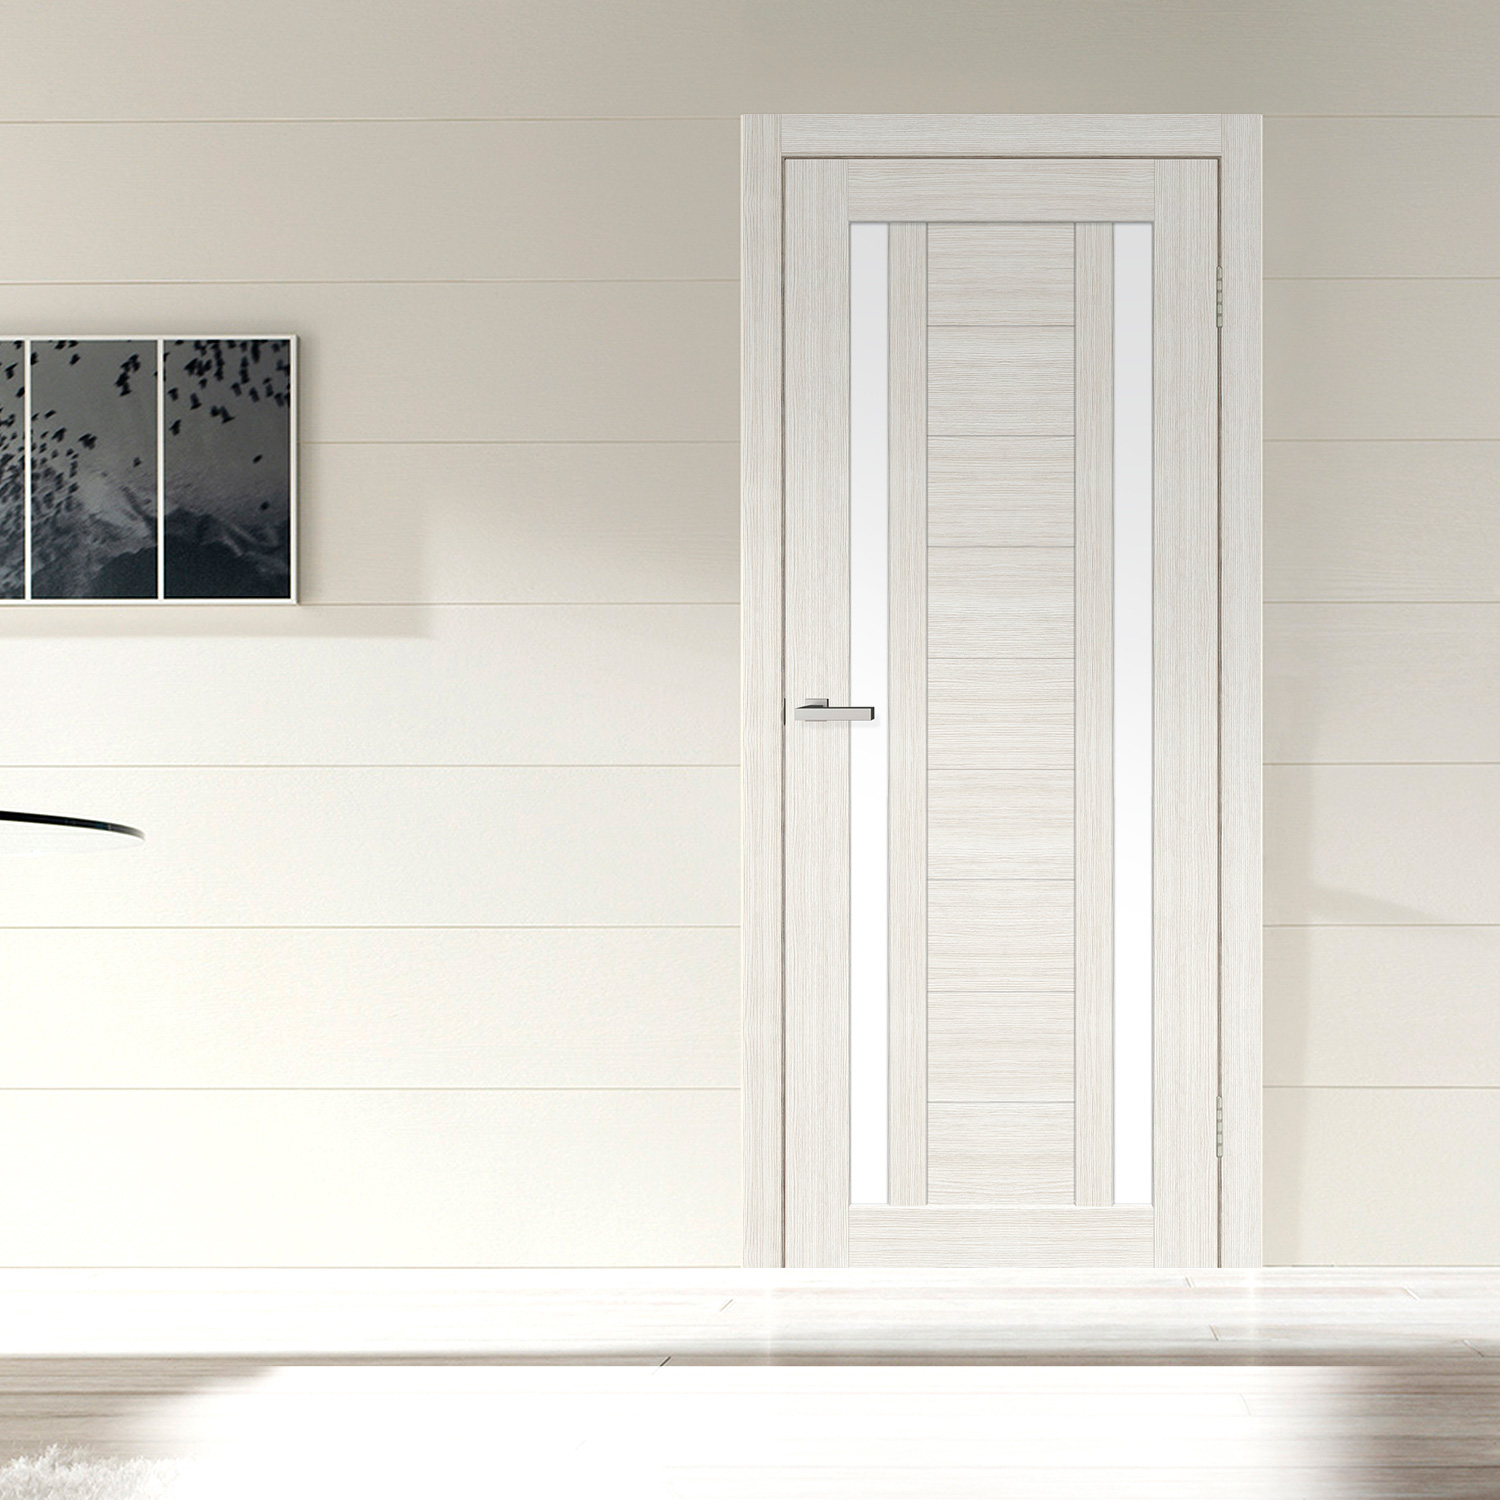 Межкомнатная дверь Межкомнатные двери Омис Cortex Deco 02 дуб bianco